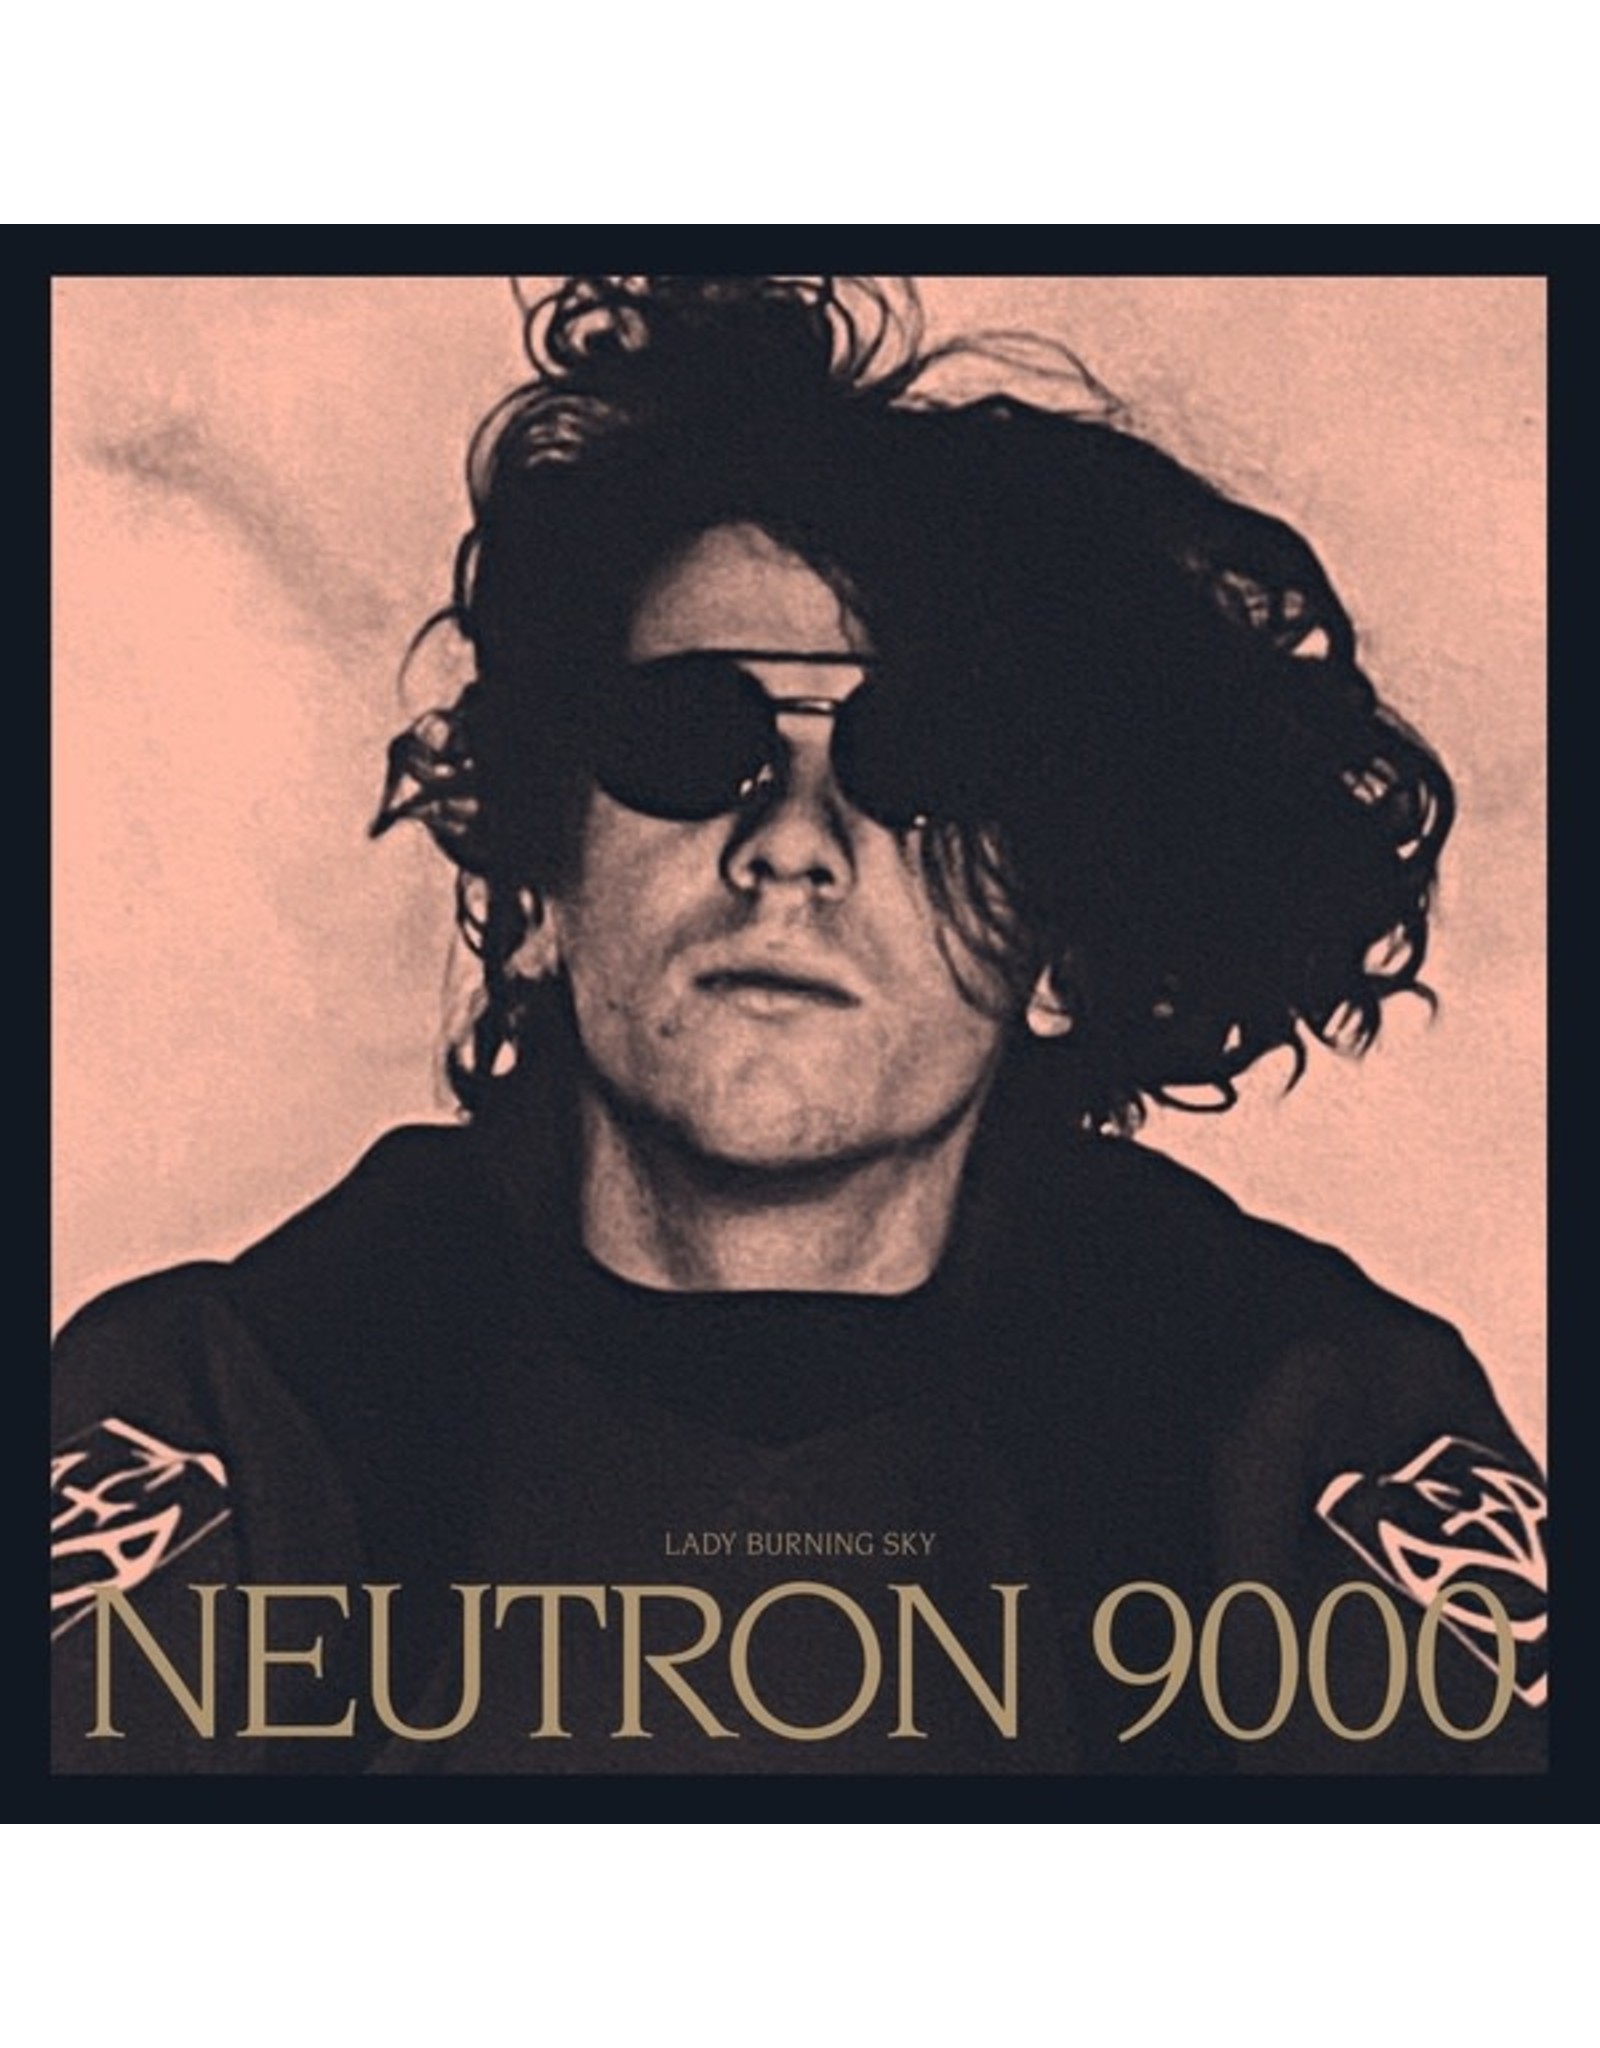 New Vinyl Neutron 9000 - Lady Burning Sky 3LP